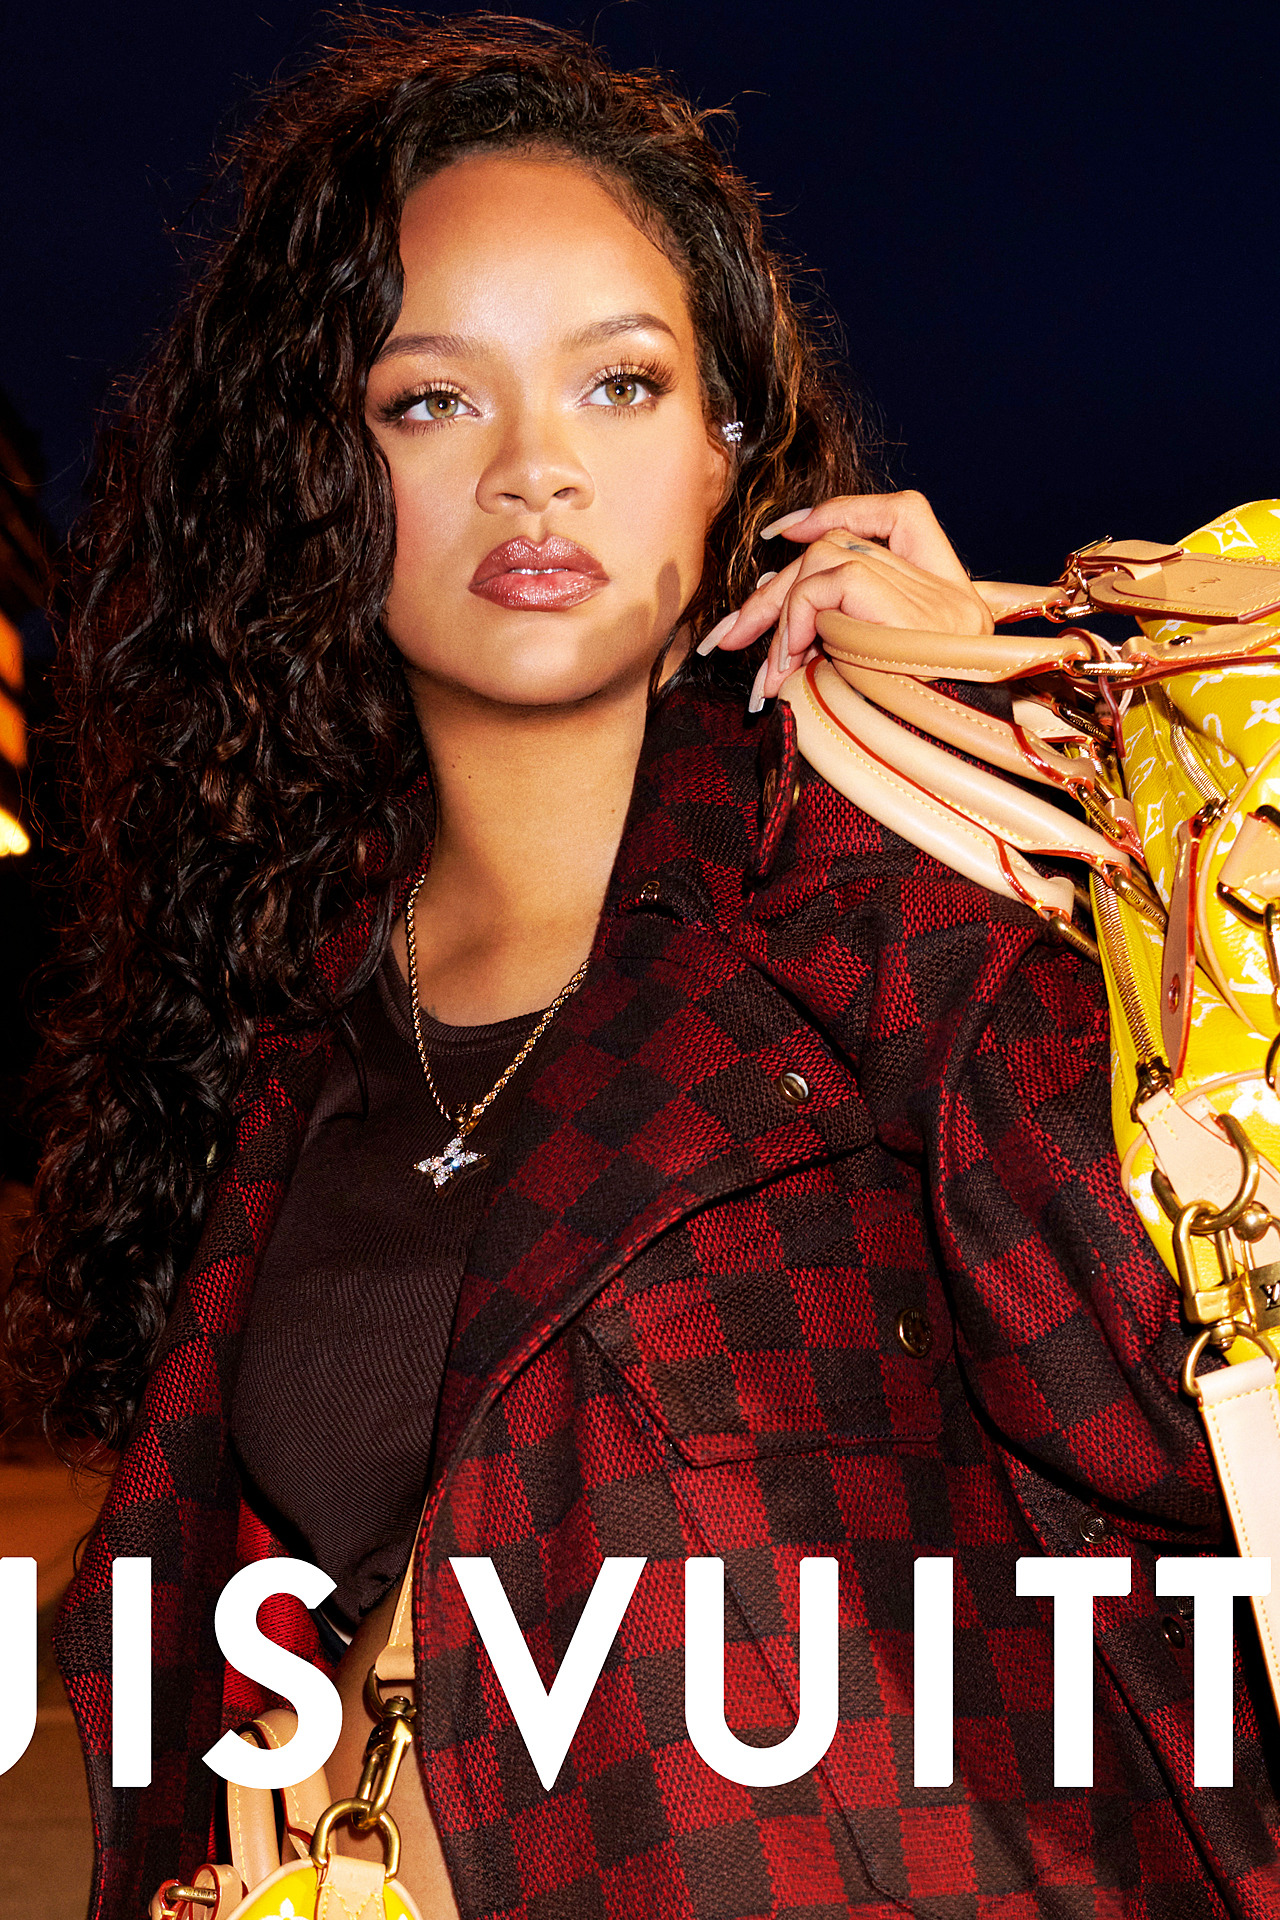 Rihanna Louis Vuitton Men Spring Summer 24 Home Decor Poster Canvas -  Mugteeco